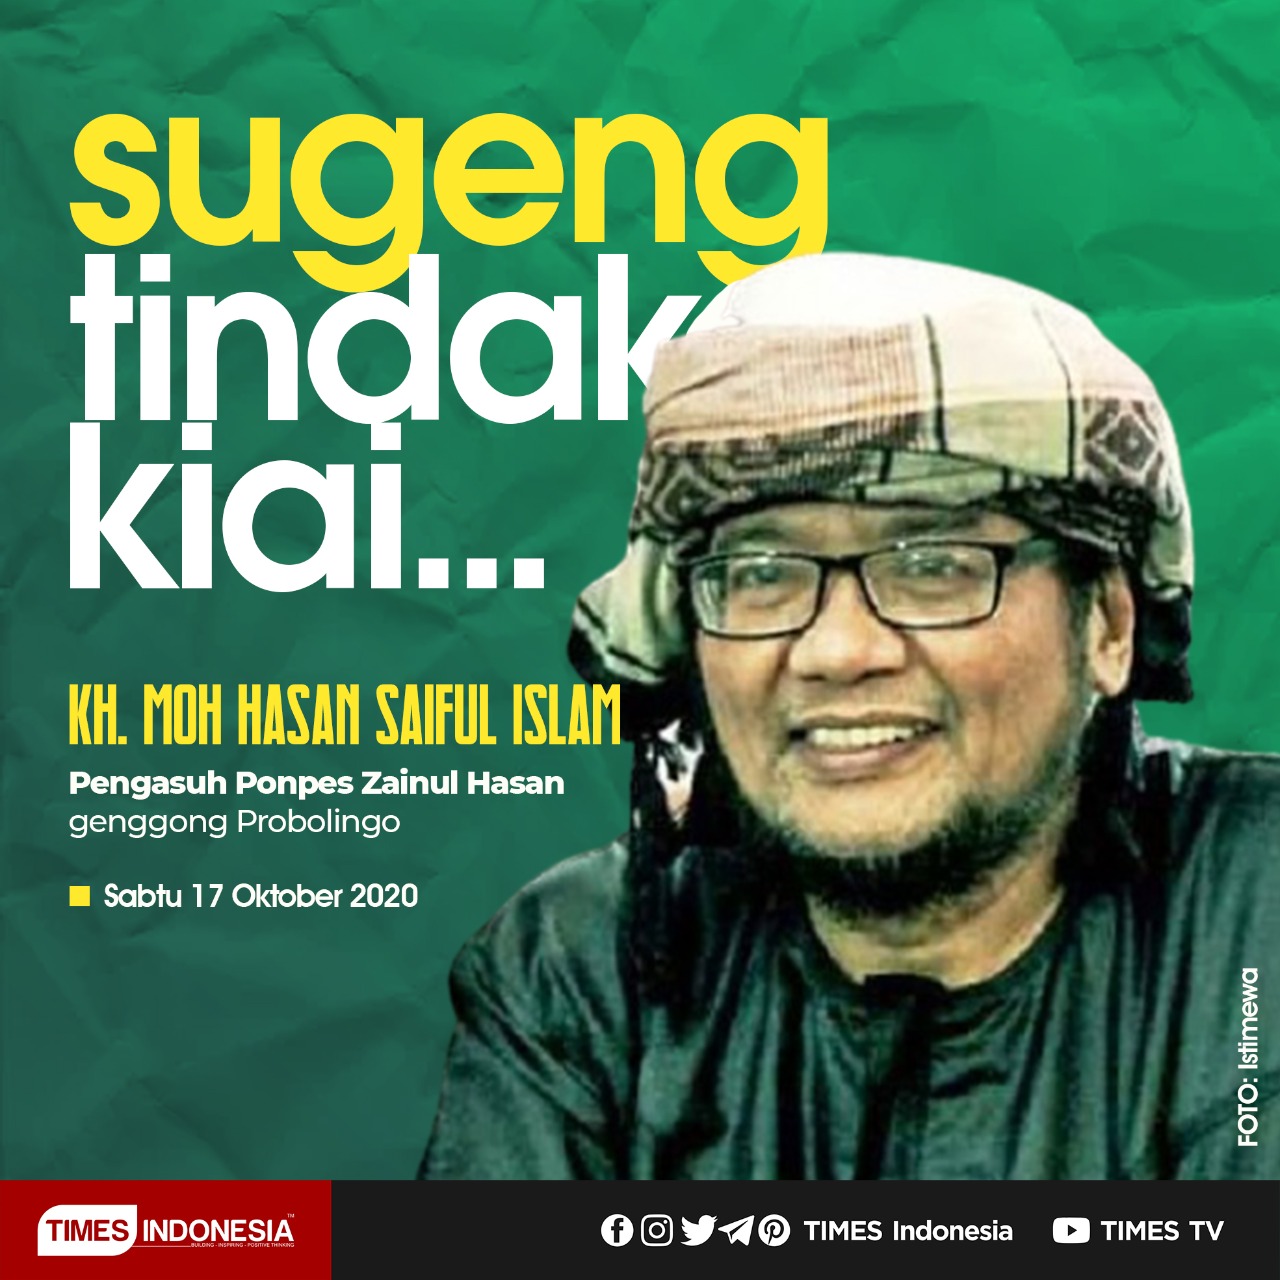 KH M Hasan Saiful lslam a